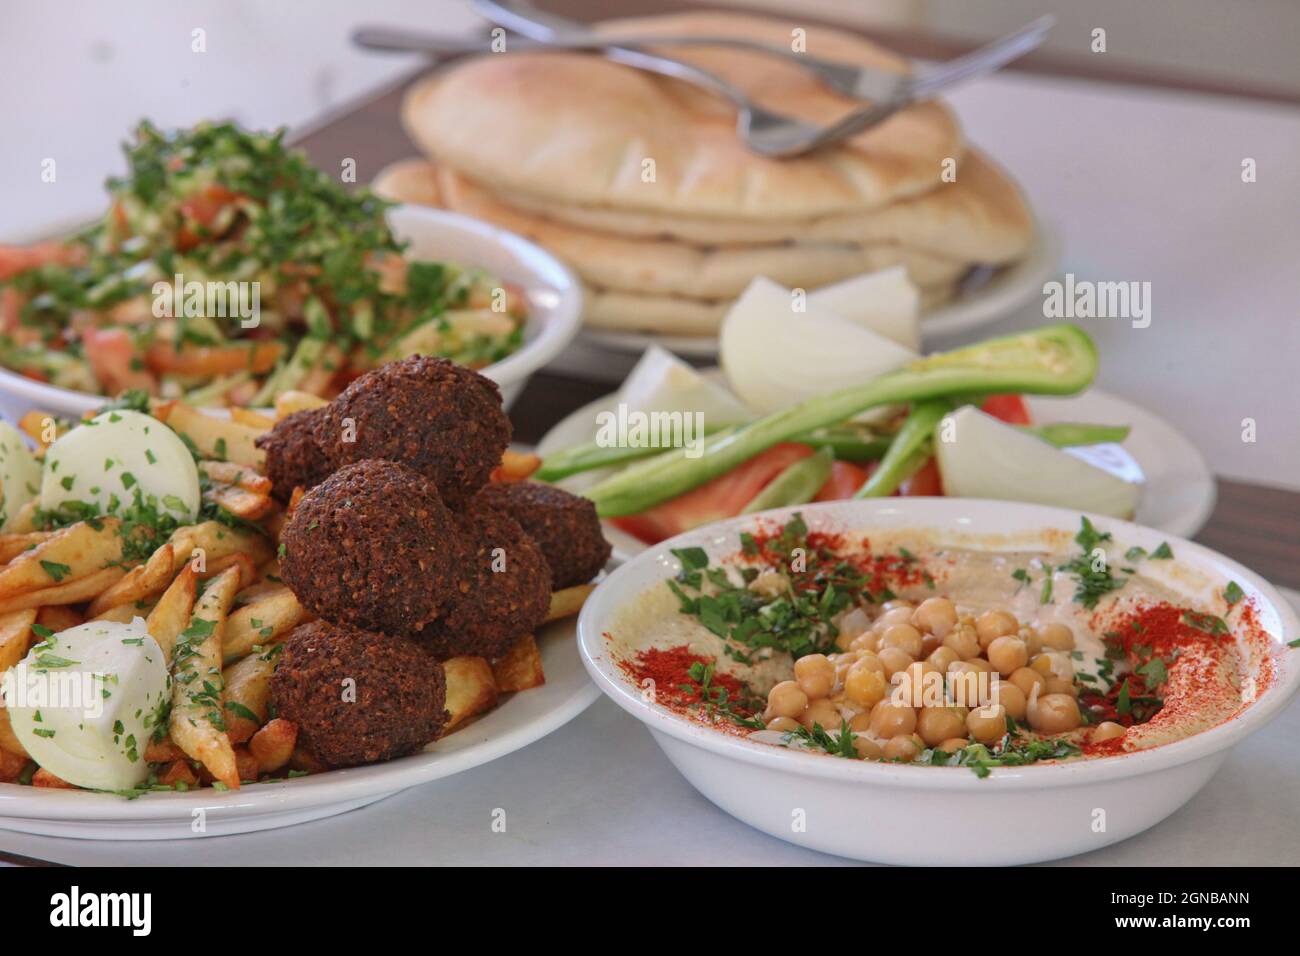 Hummus. Einem arabischen levantinischen Dip oder Aufstrich aus gekochten, zerdrückten Kichererbsen mit Tahin, Olivenöl, Zitronensaft, Salz und Knoblauch gemischt. Garniert mit Stockfoto